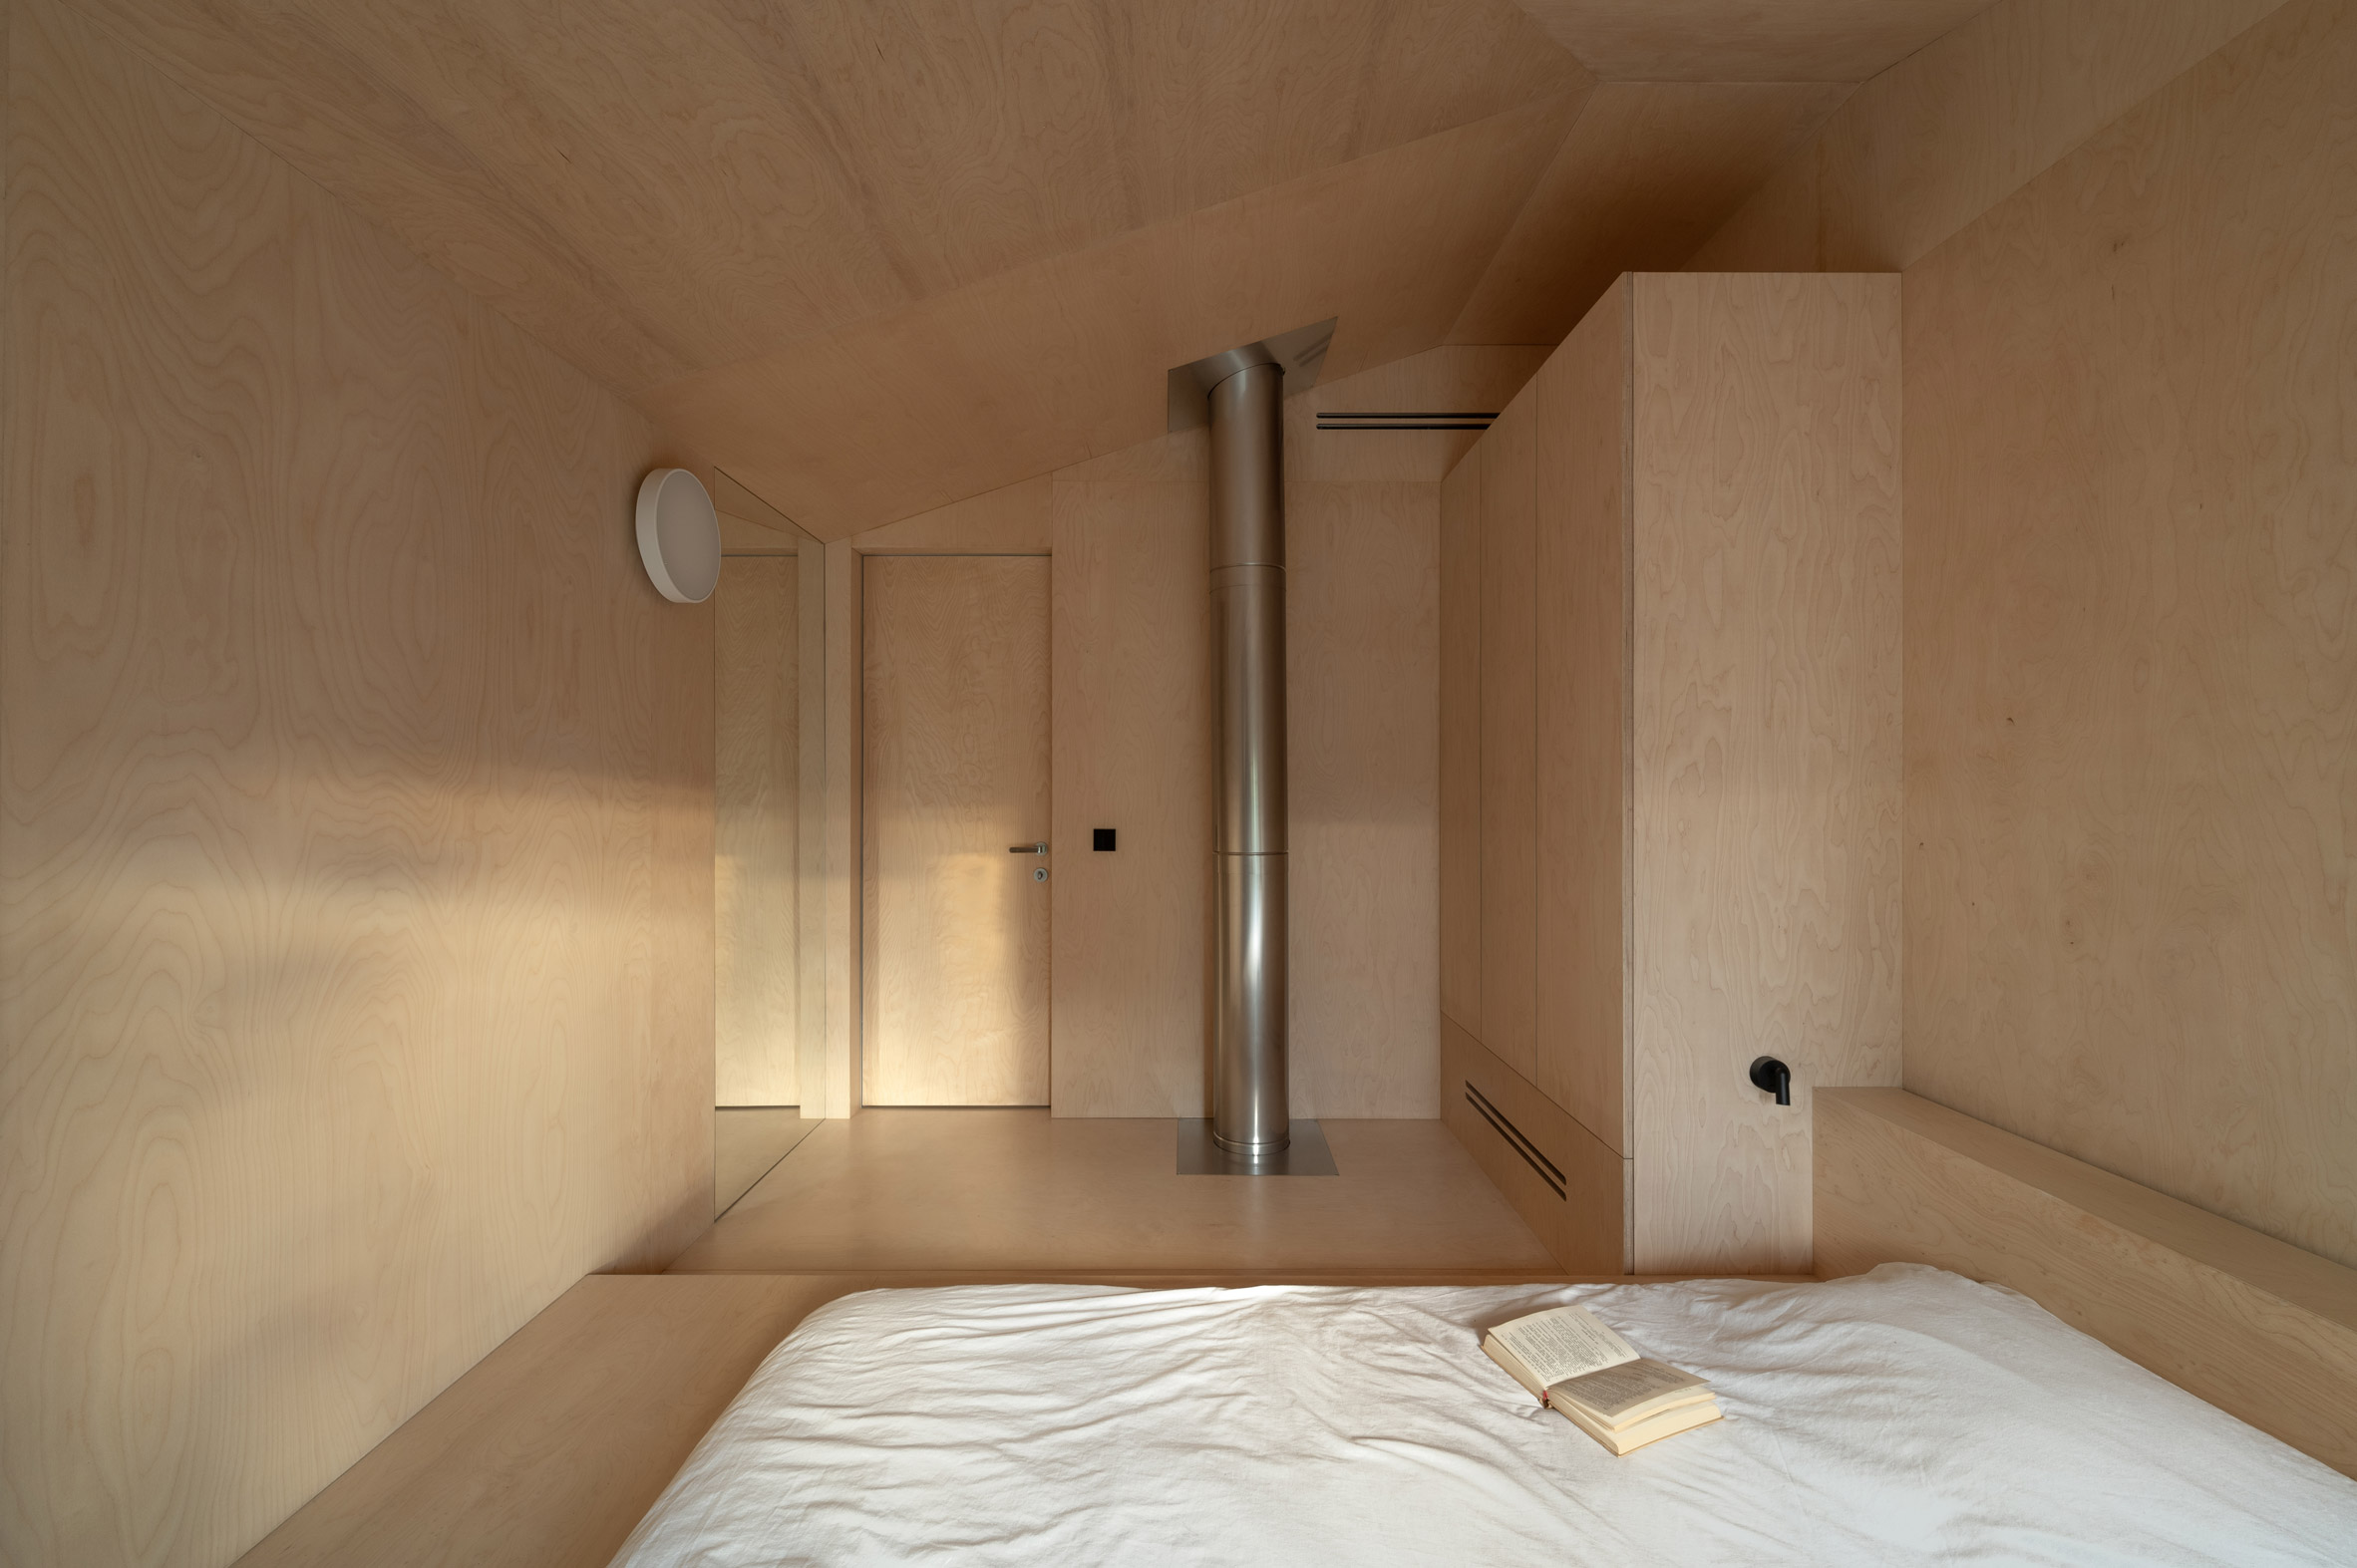 Bedroom within Dzen House by Shovk